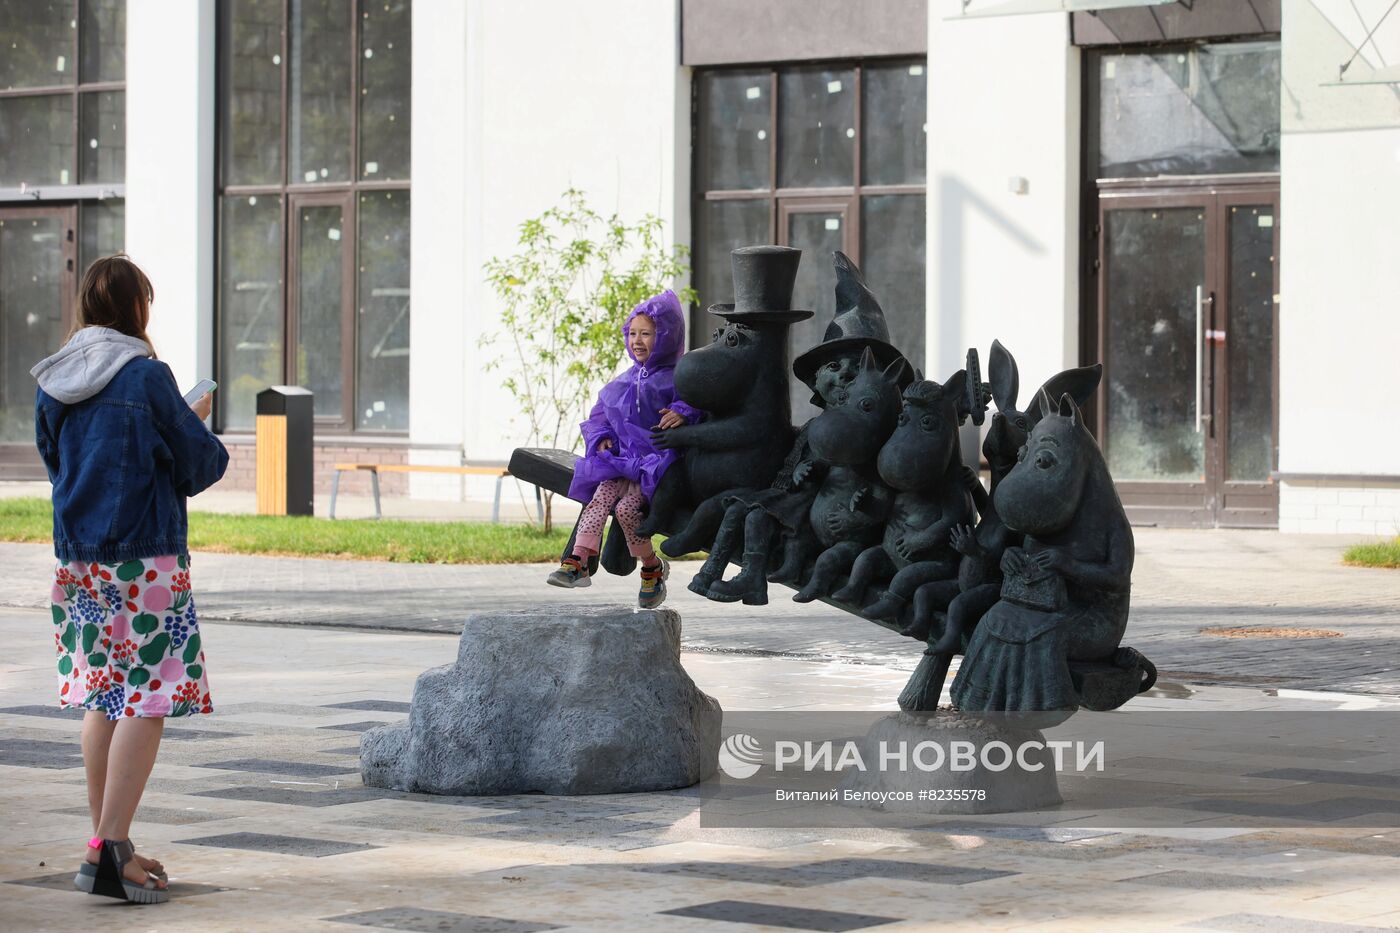 Памятник Муми-троллям появился в Новой Москве